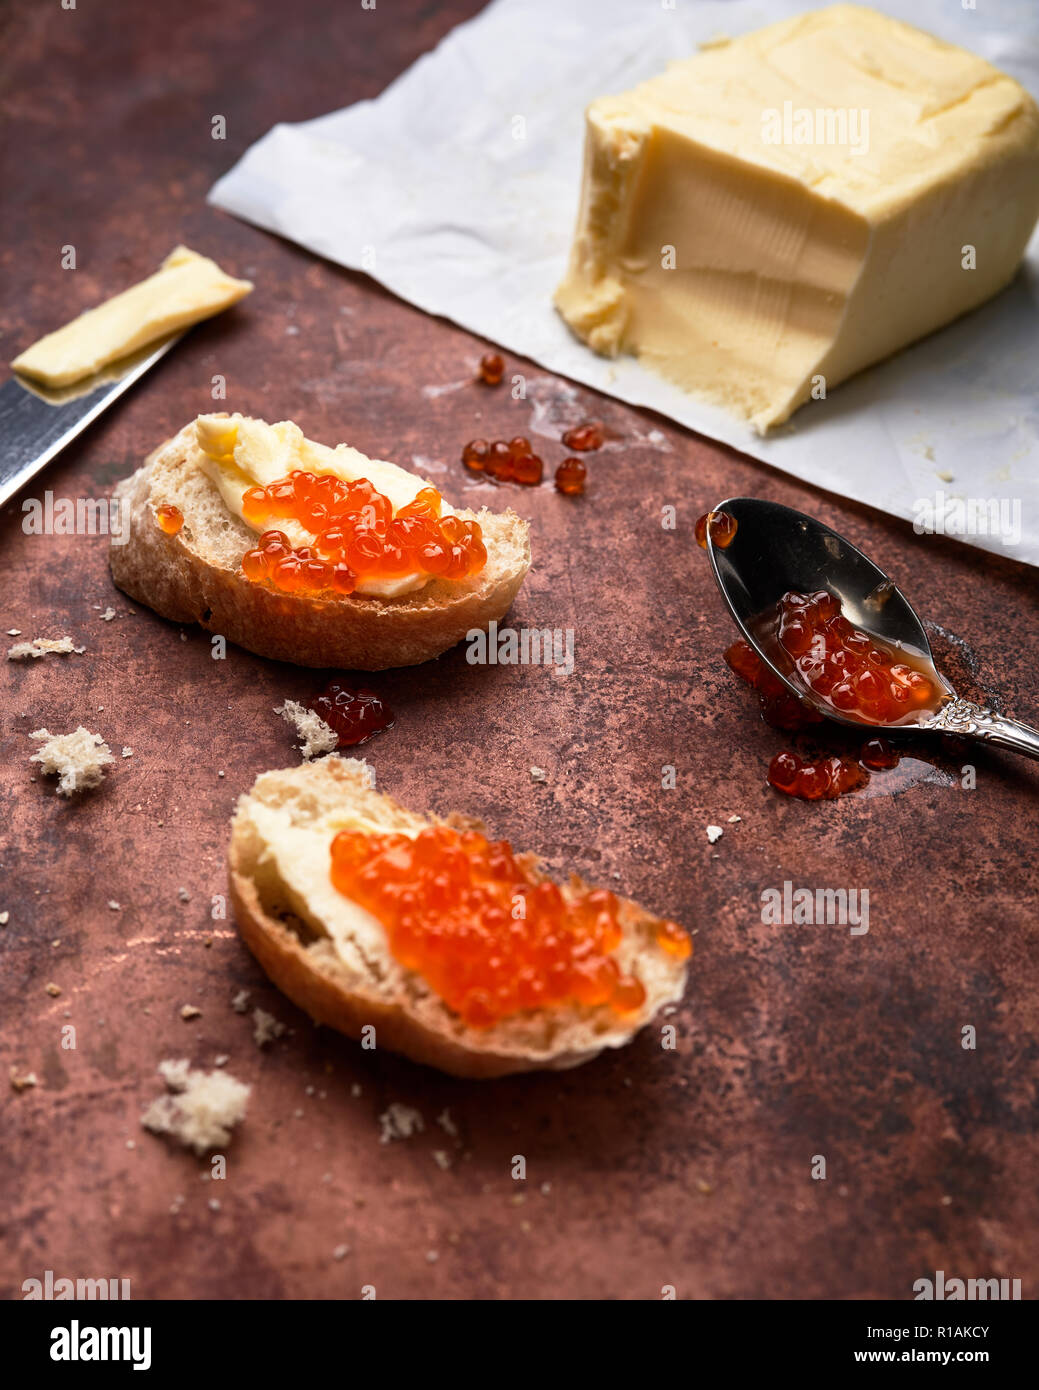 El caviar rojo de salmón en lata y sandwiches. Foto de stock